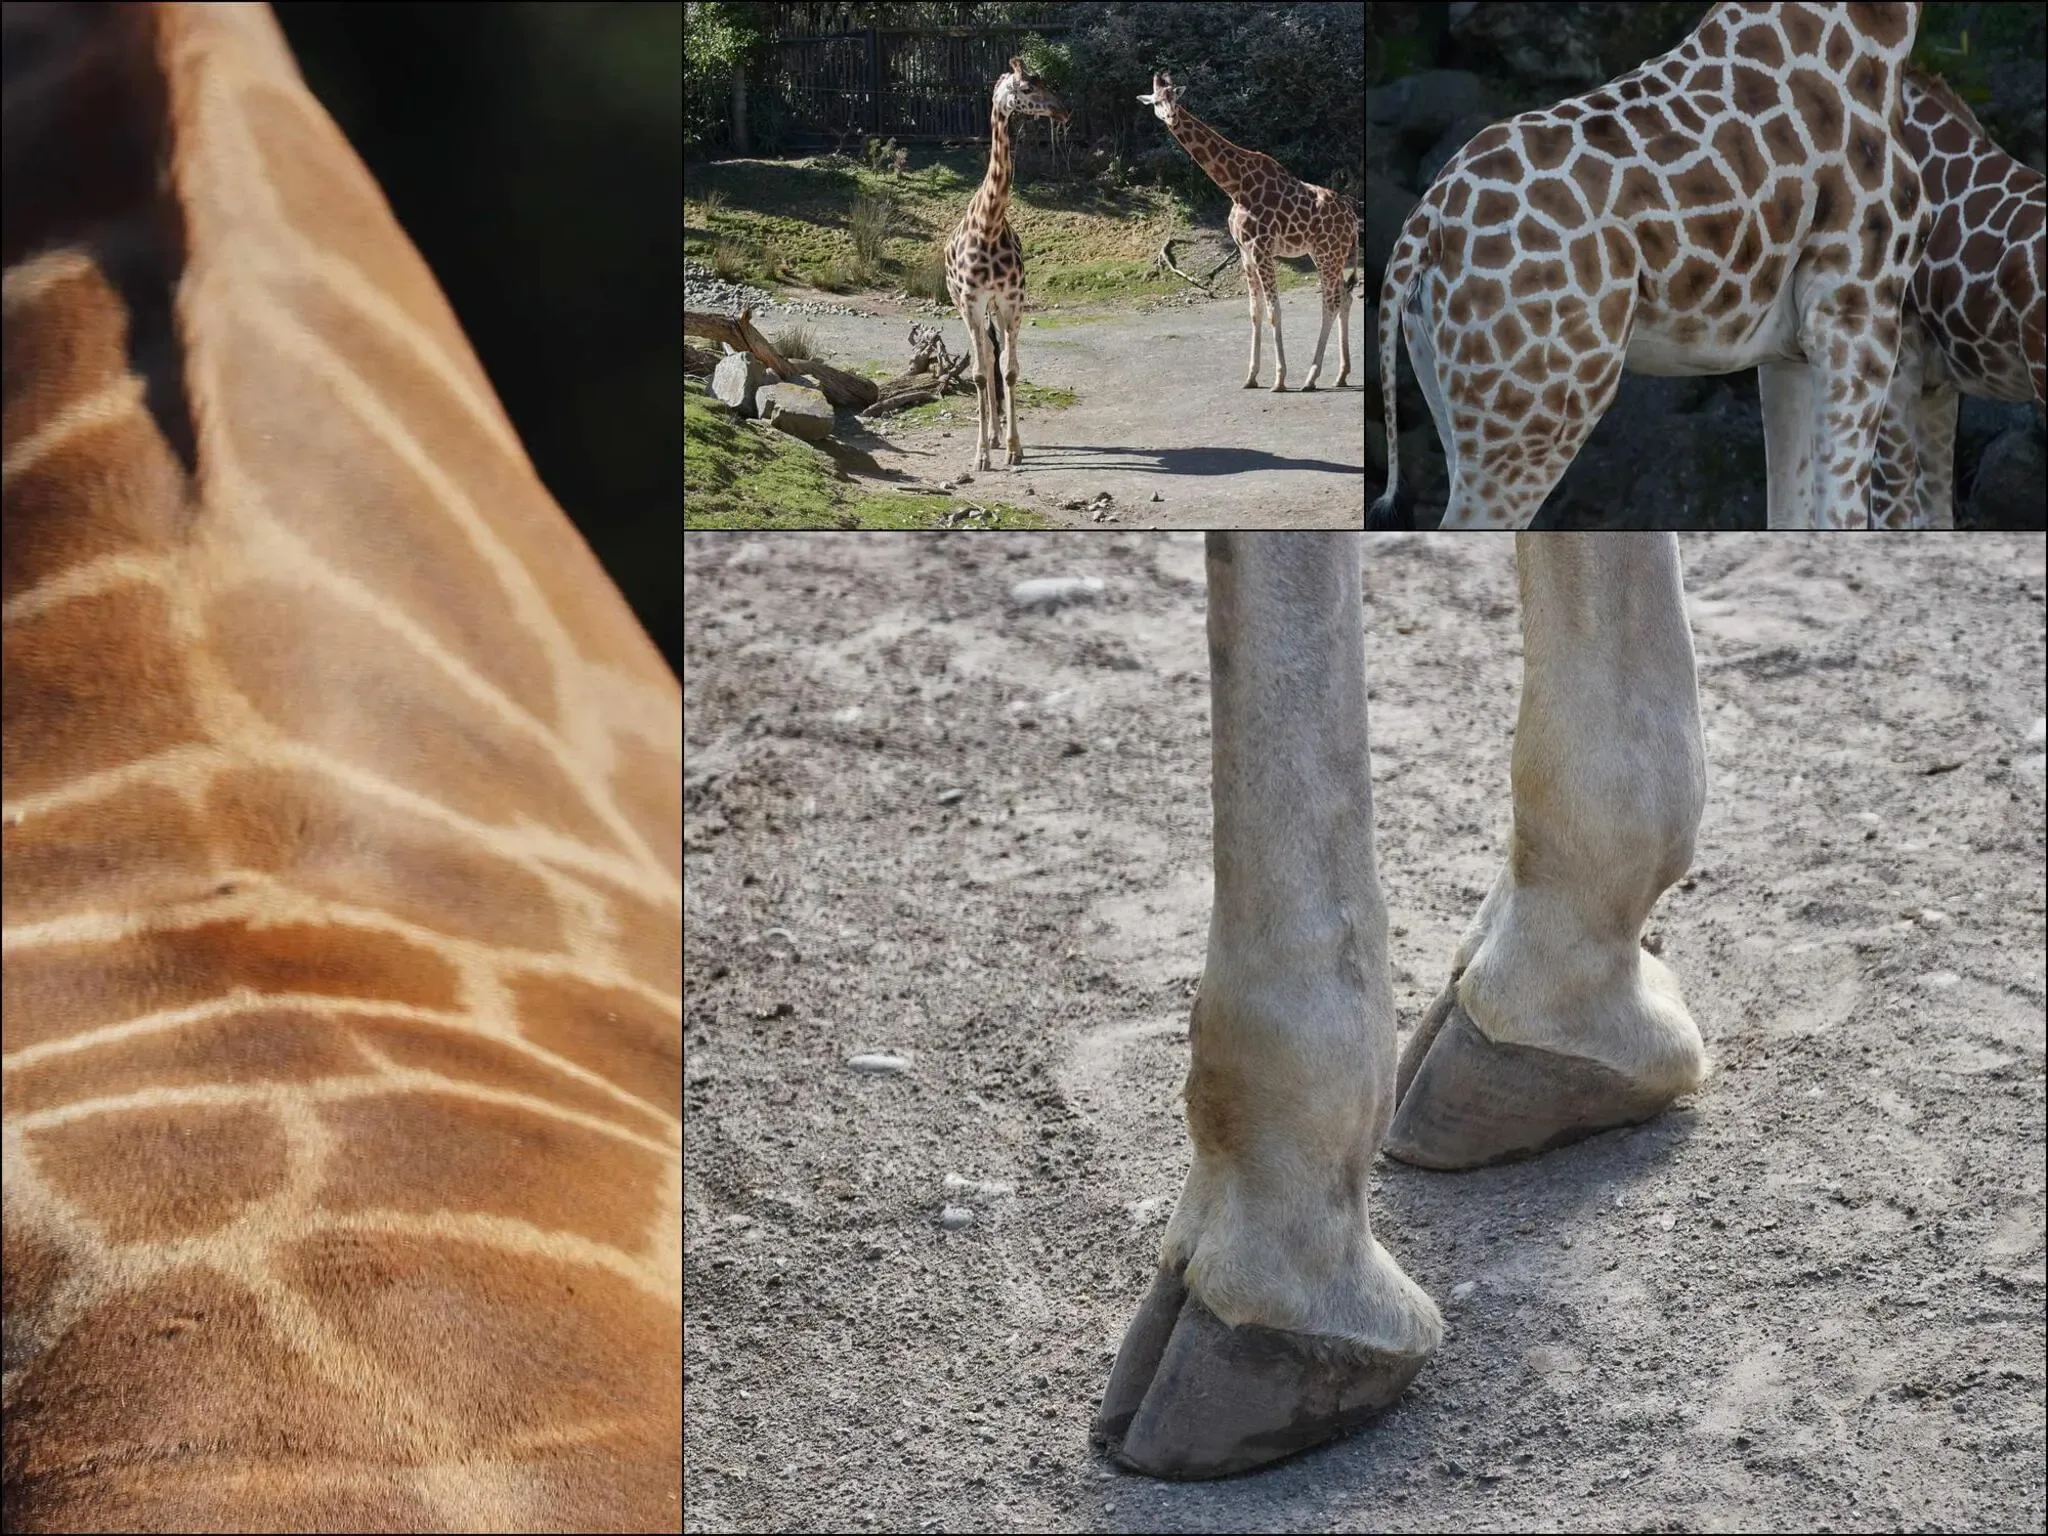 296 photos of Giraffes